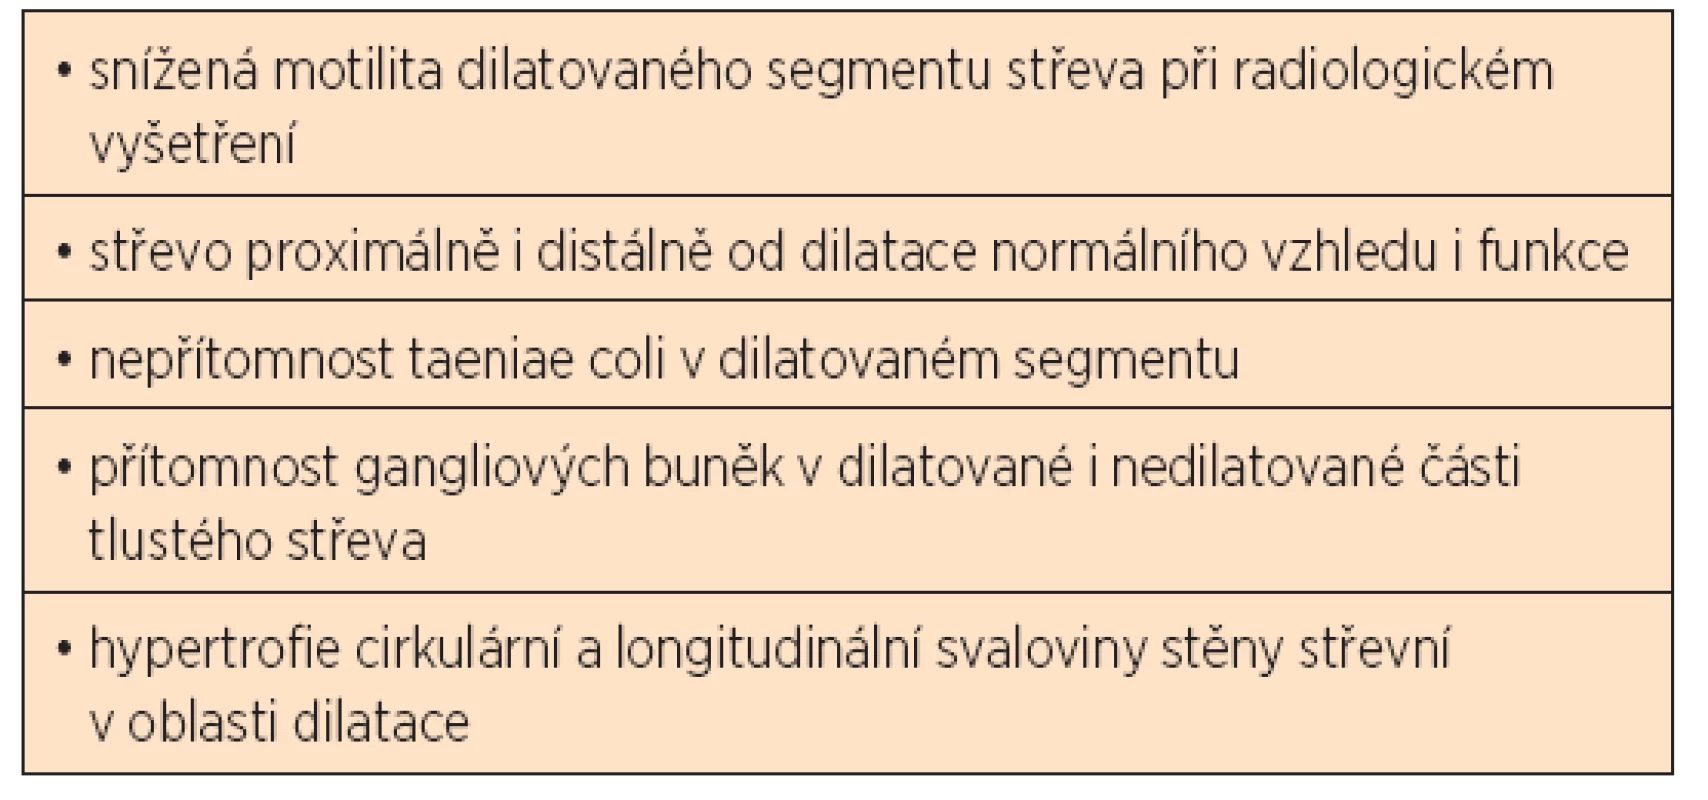 Klinické a patologické znaky segmentální dilatace colon podle Brawnera a Shafera (1973) [30].